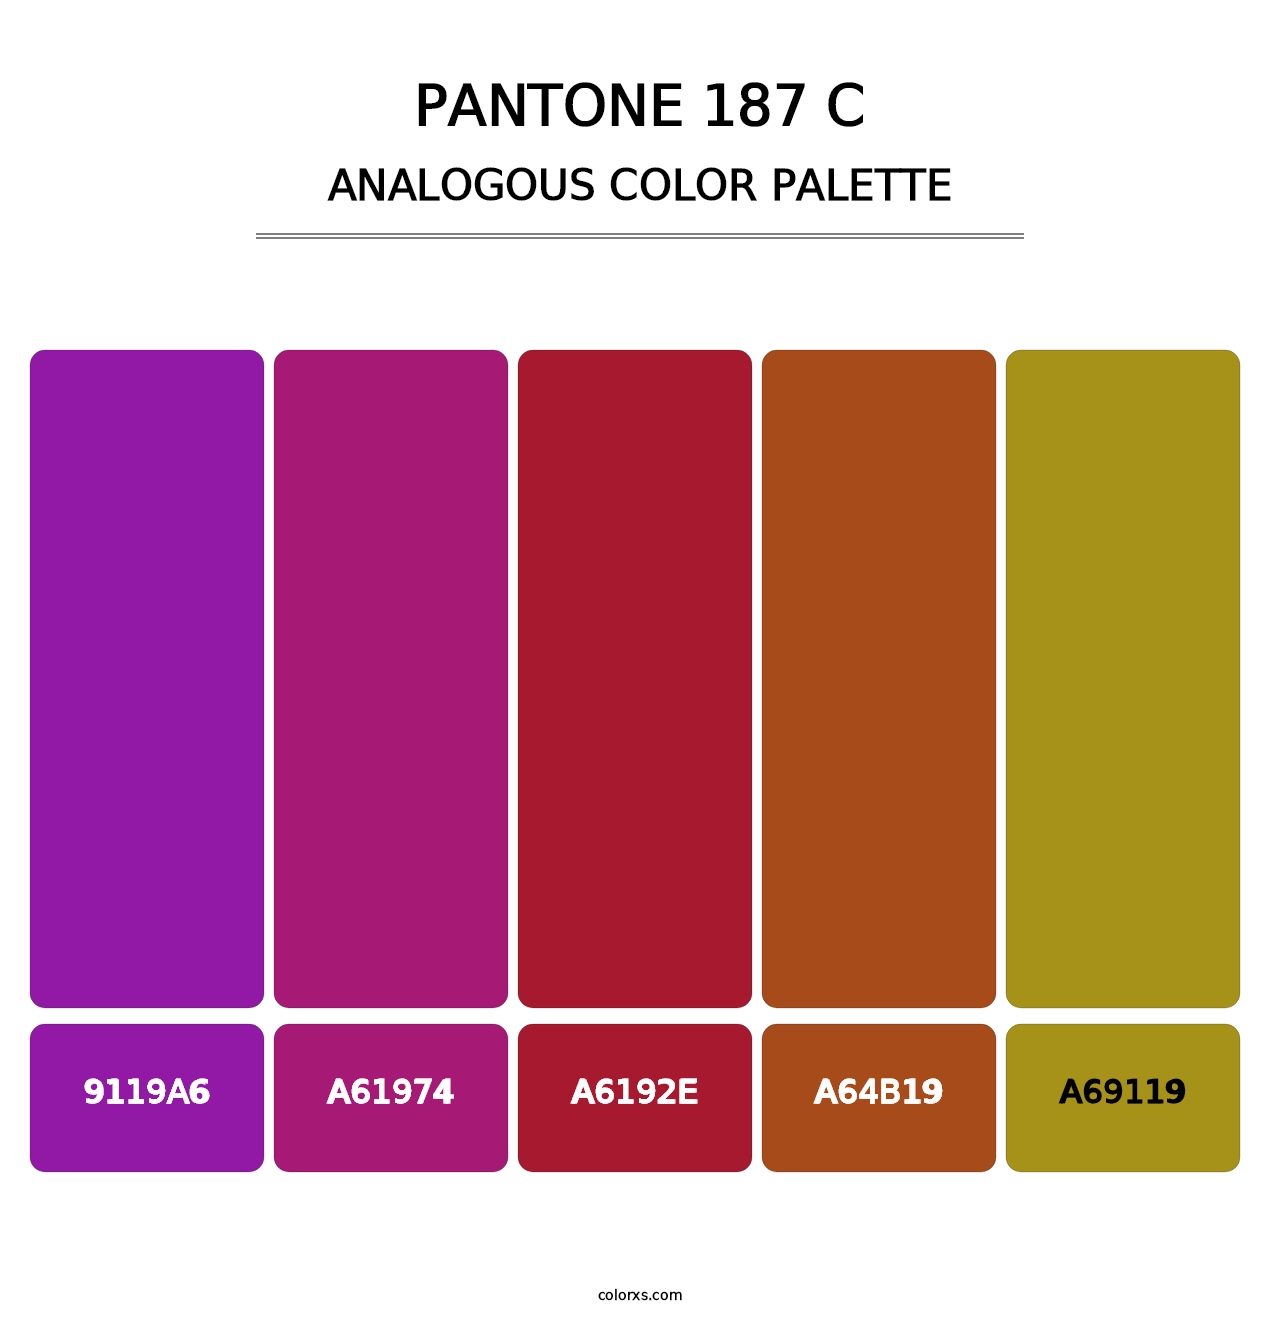 PANTONE 187 C - Analogous Color Palette